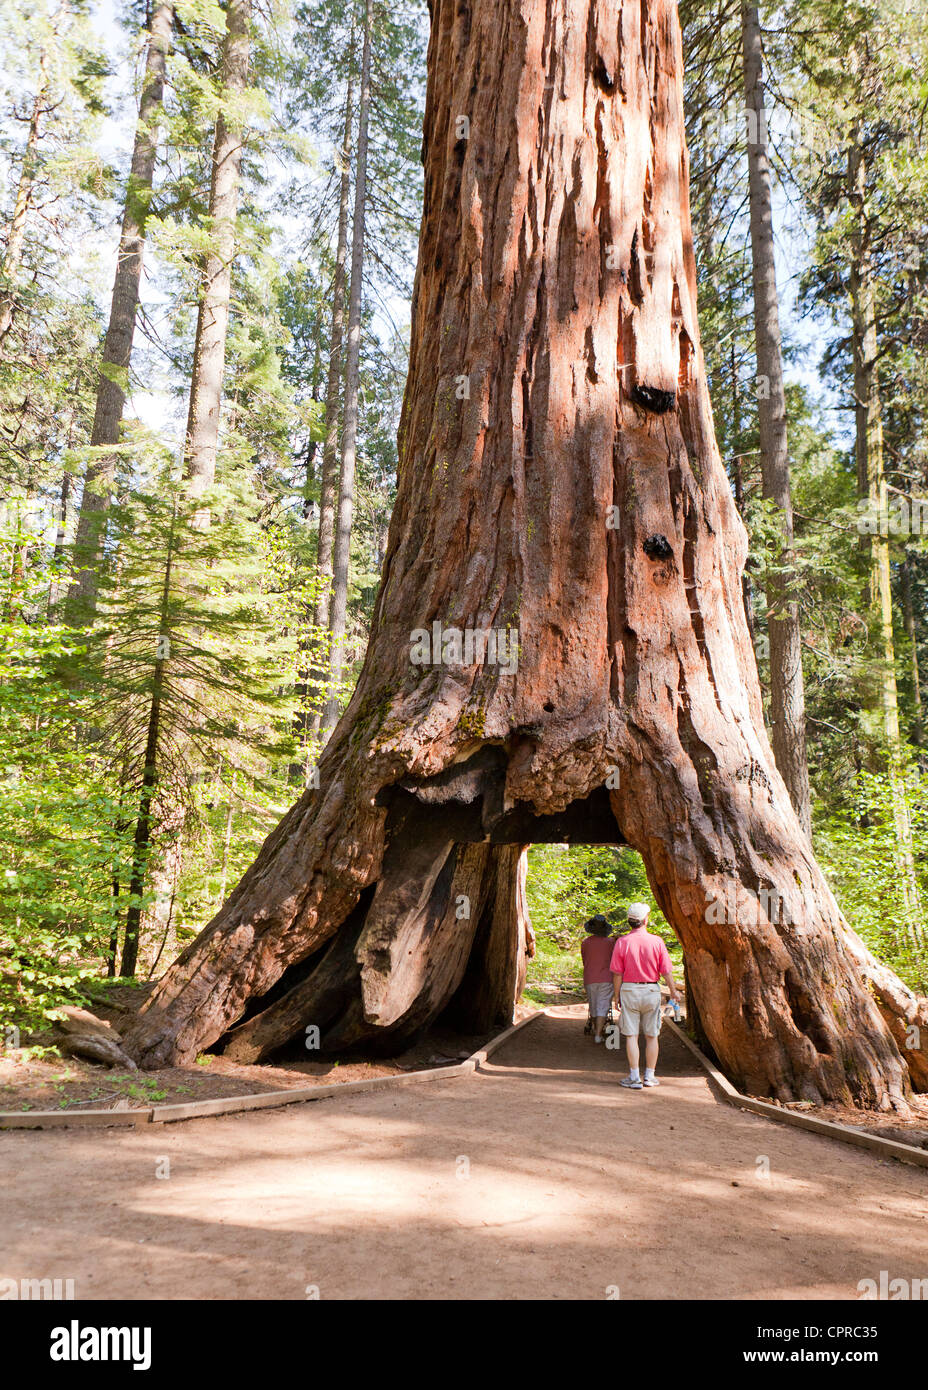 La gente caminando a través de la secoya gigante Pioneer Cabin Tree - Calaveras Big Tree State Park, California, EE.UU. Foto de stock